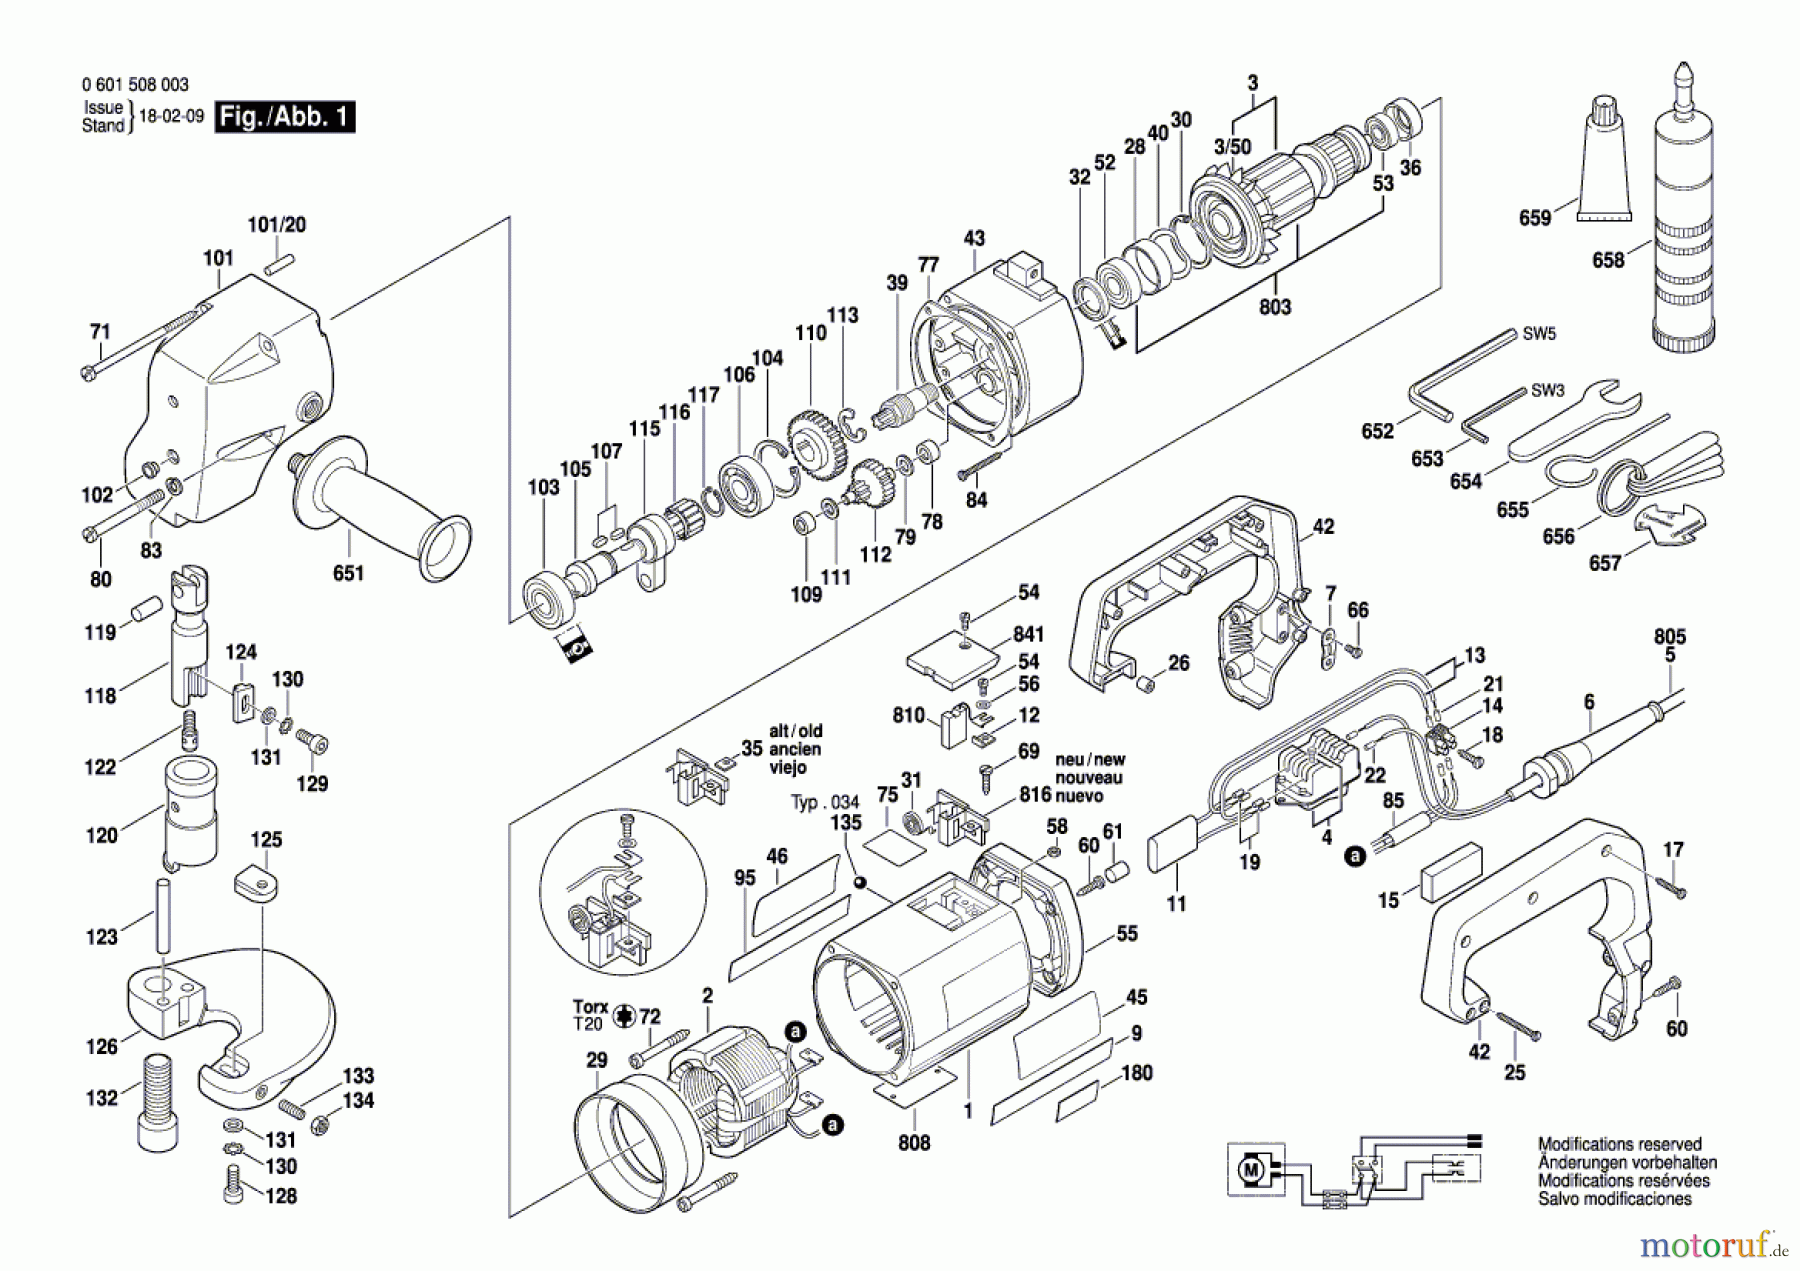  Bosch Werkzeug Blechschere ---- Seite 1